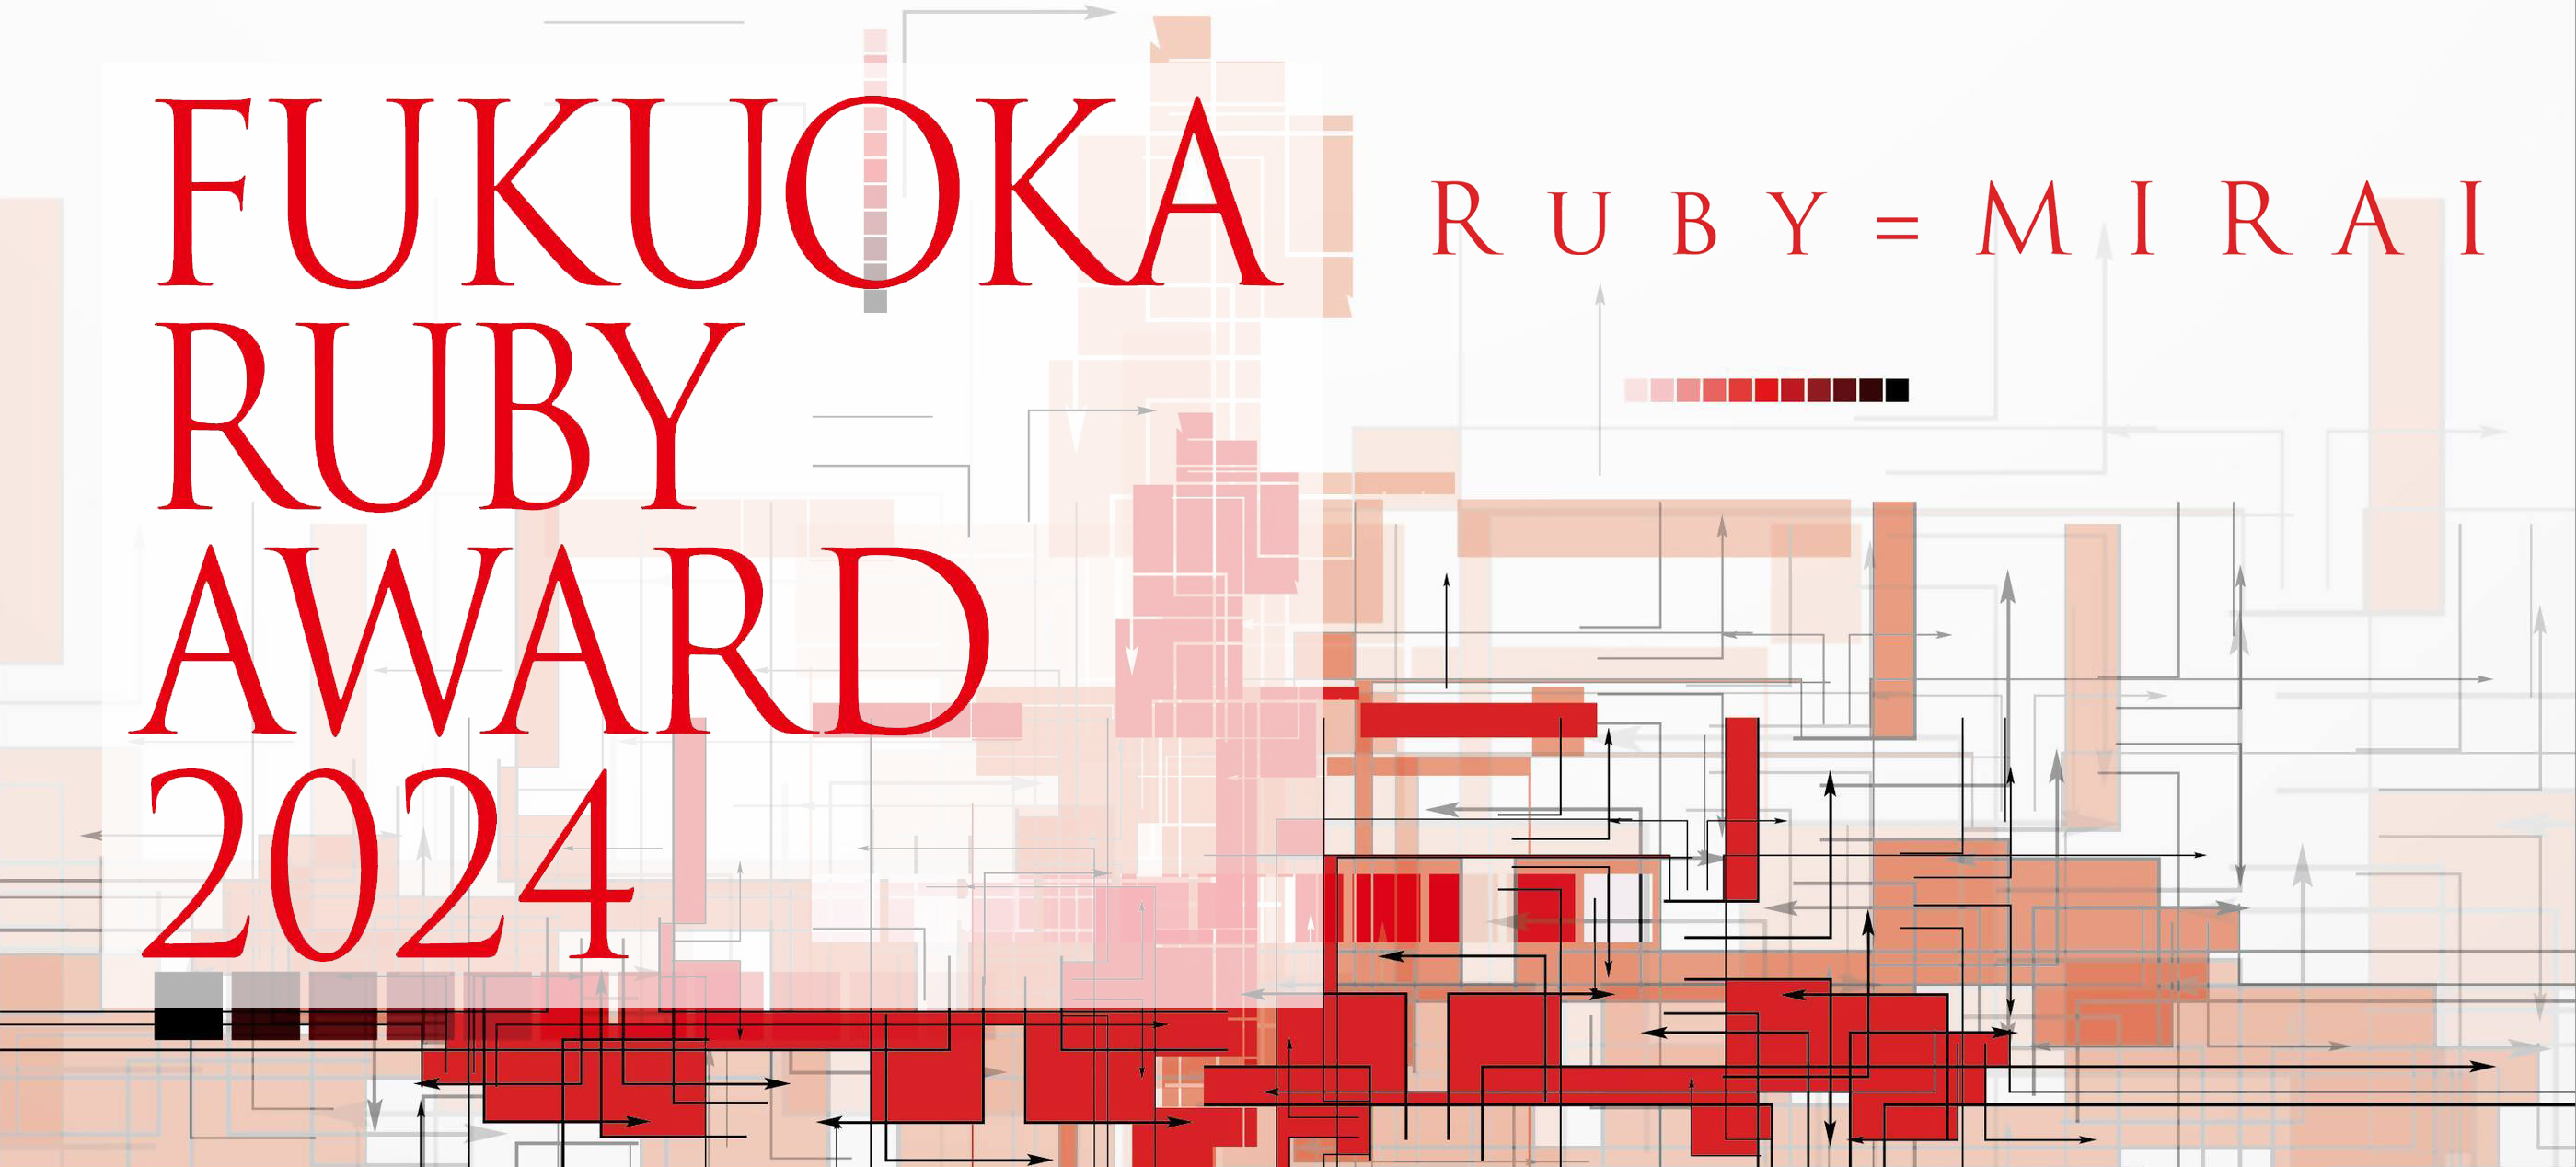 FUKUOKA Ruby Award 2024